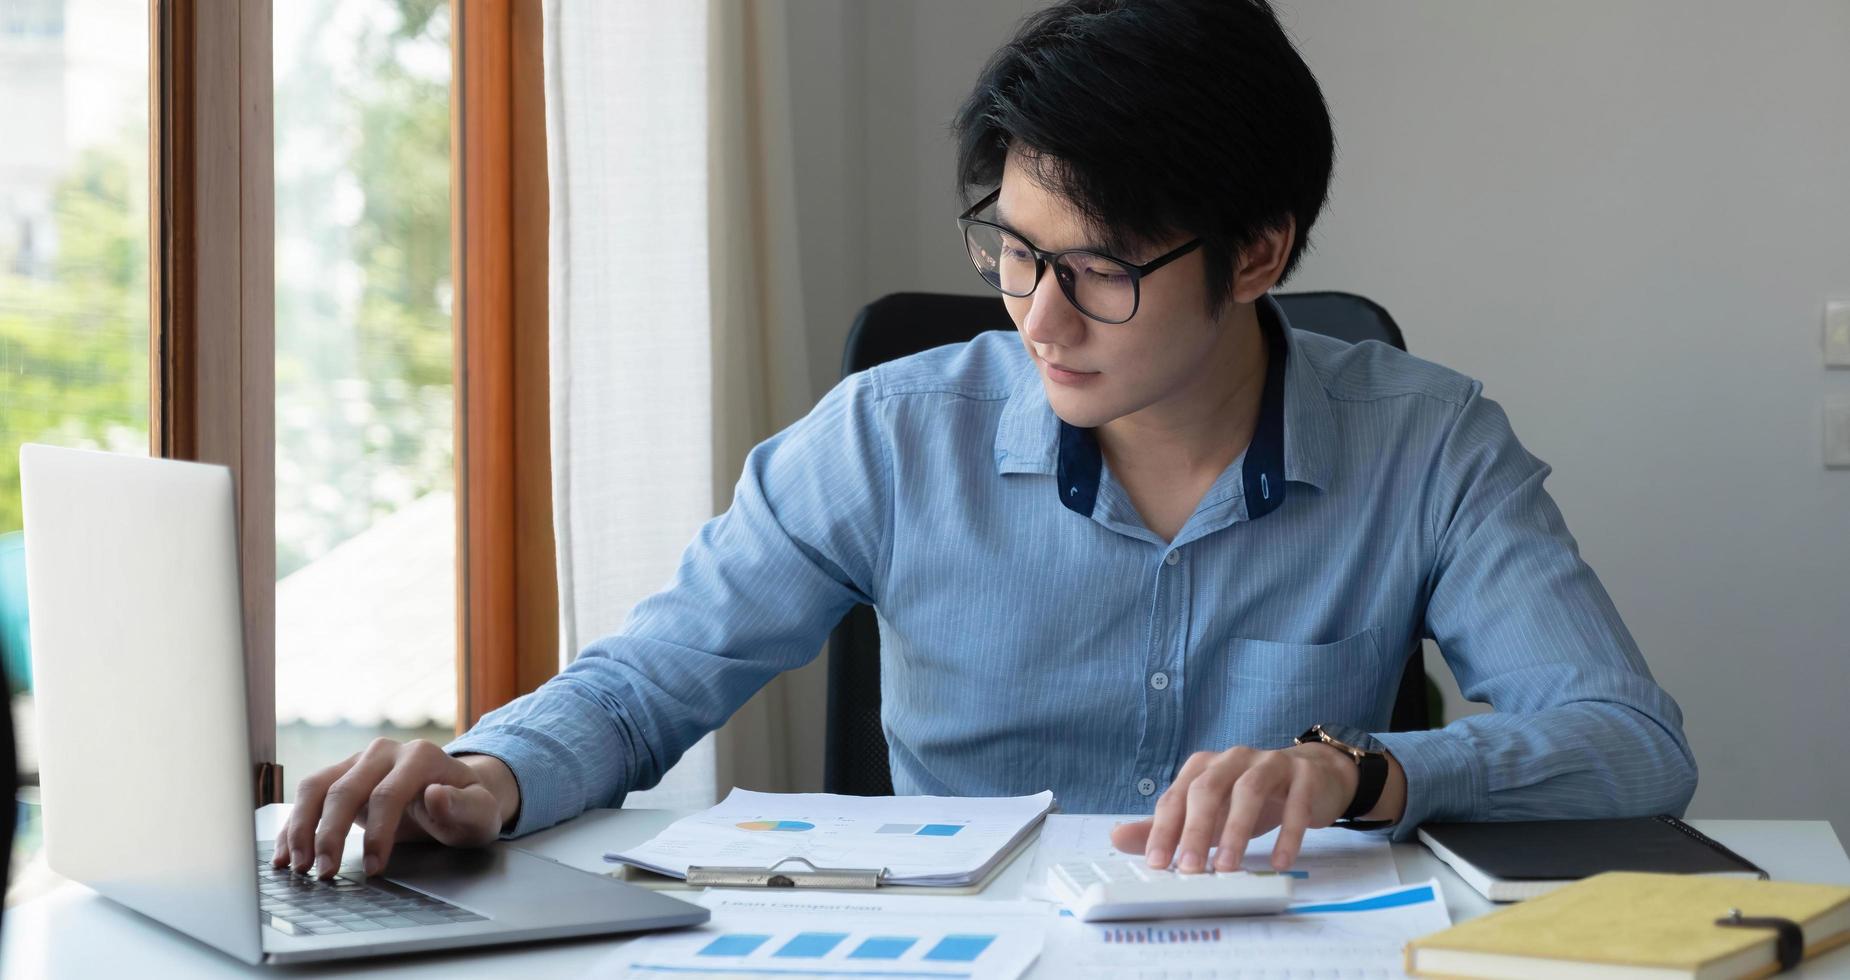 portrait d'un jeune homme asiatique pigiste à la main travaille son travail sur une tablette informatique dans un bureau moderne. faire un rapport d'analyse comptable sur les données d'investissement immobilier, le concept de systèmes financiers et fiscaux. photo